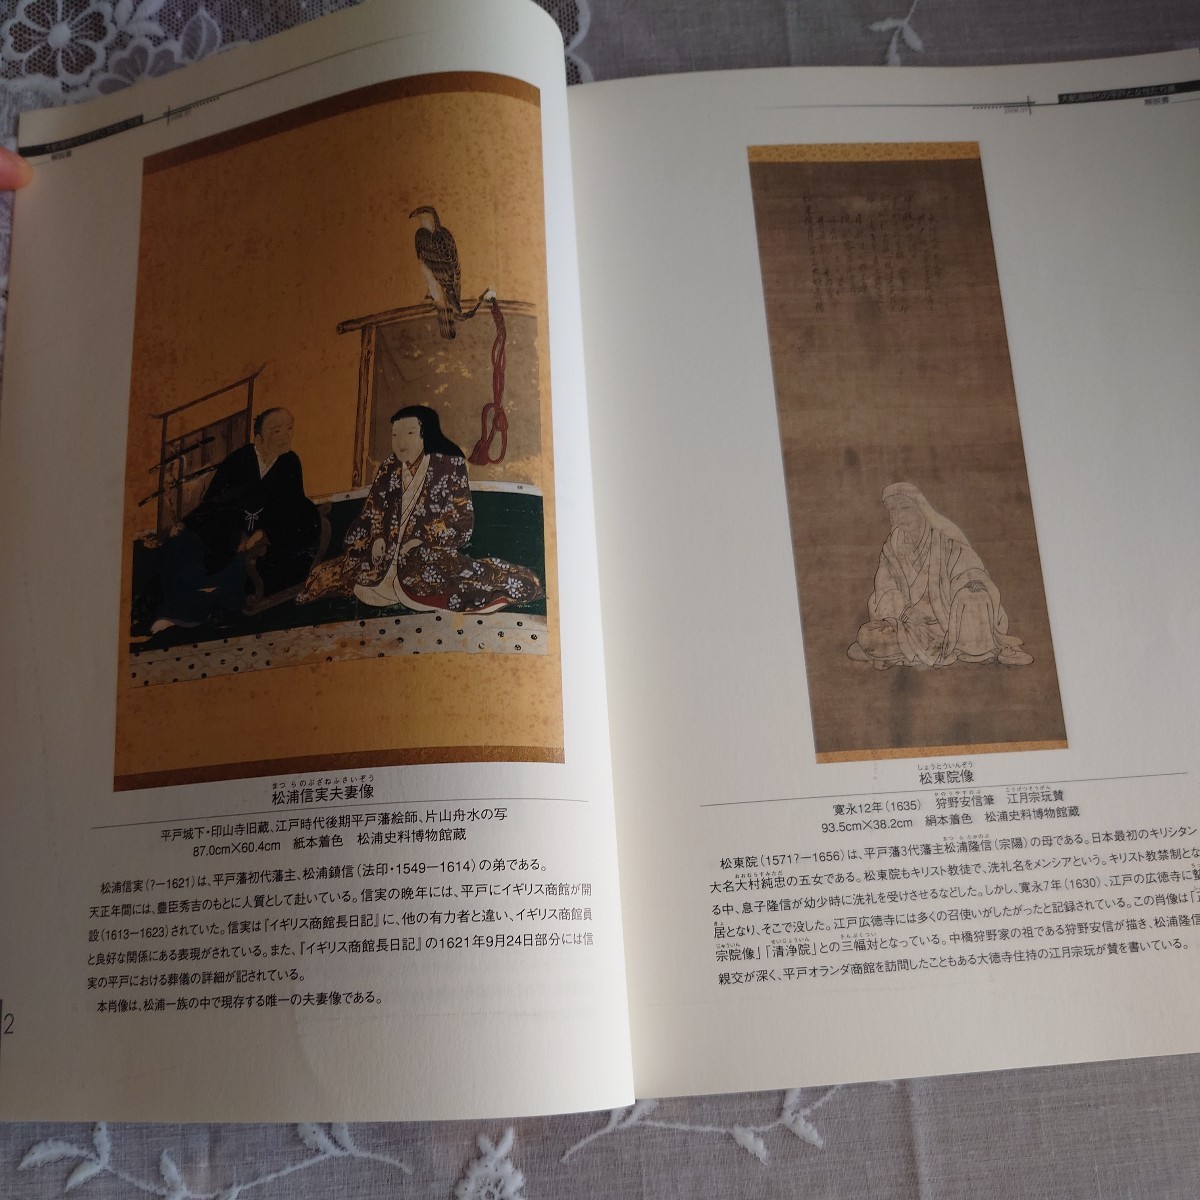 海と船の企画展解説書「大航海時代の平戸と女性たち展」2006年、松浦史料博物館、図版カラー、15P_画像3